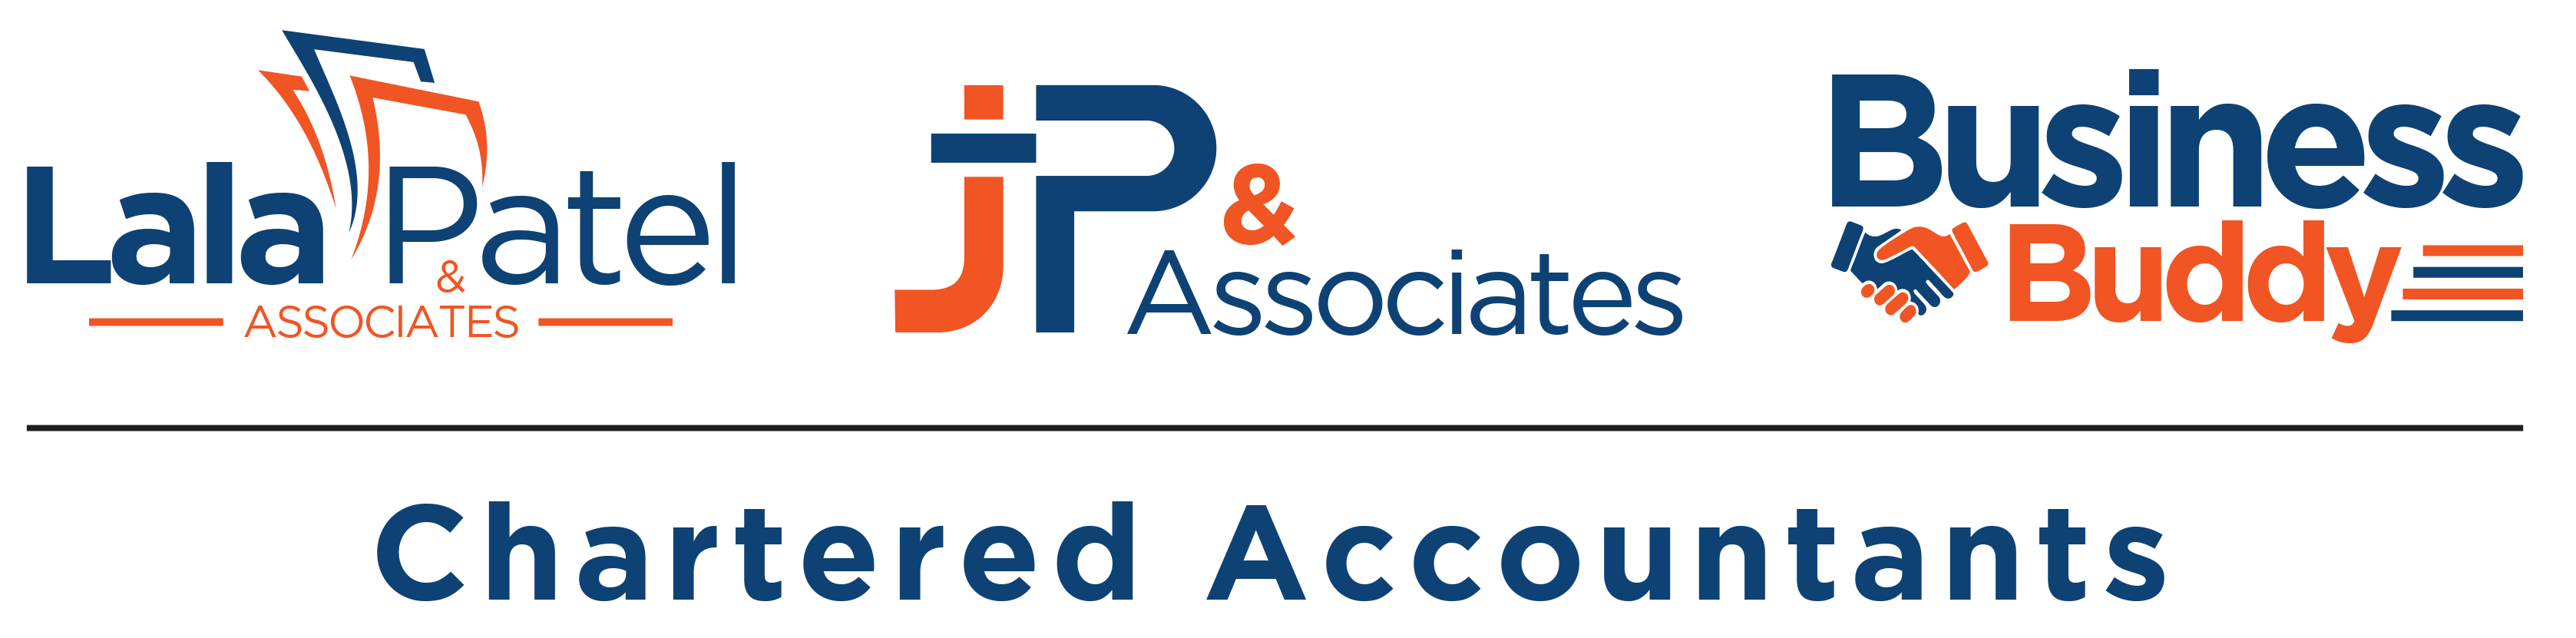 JP & Associates